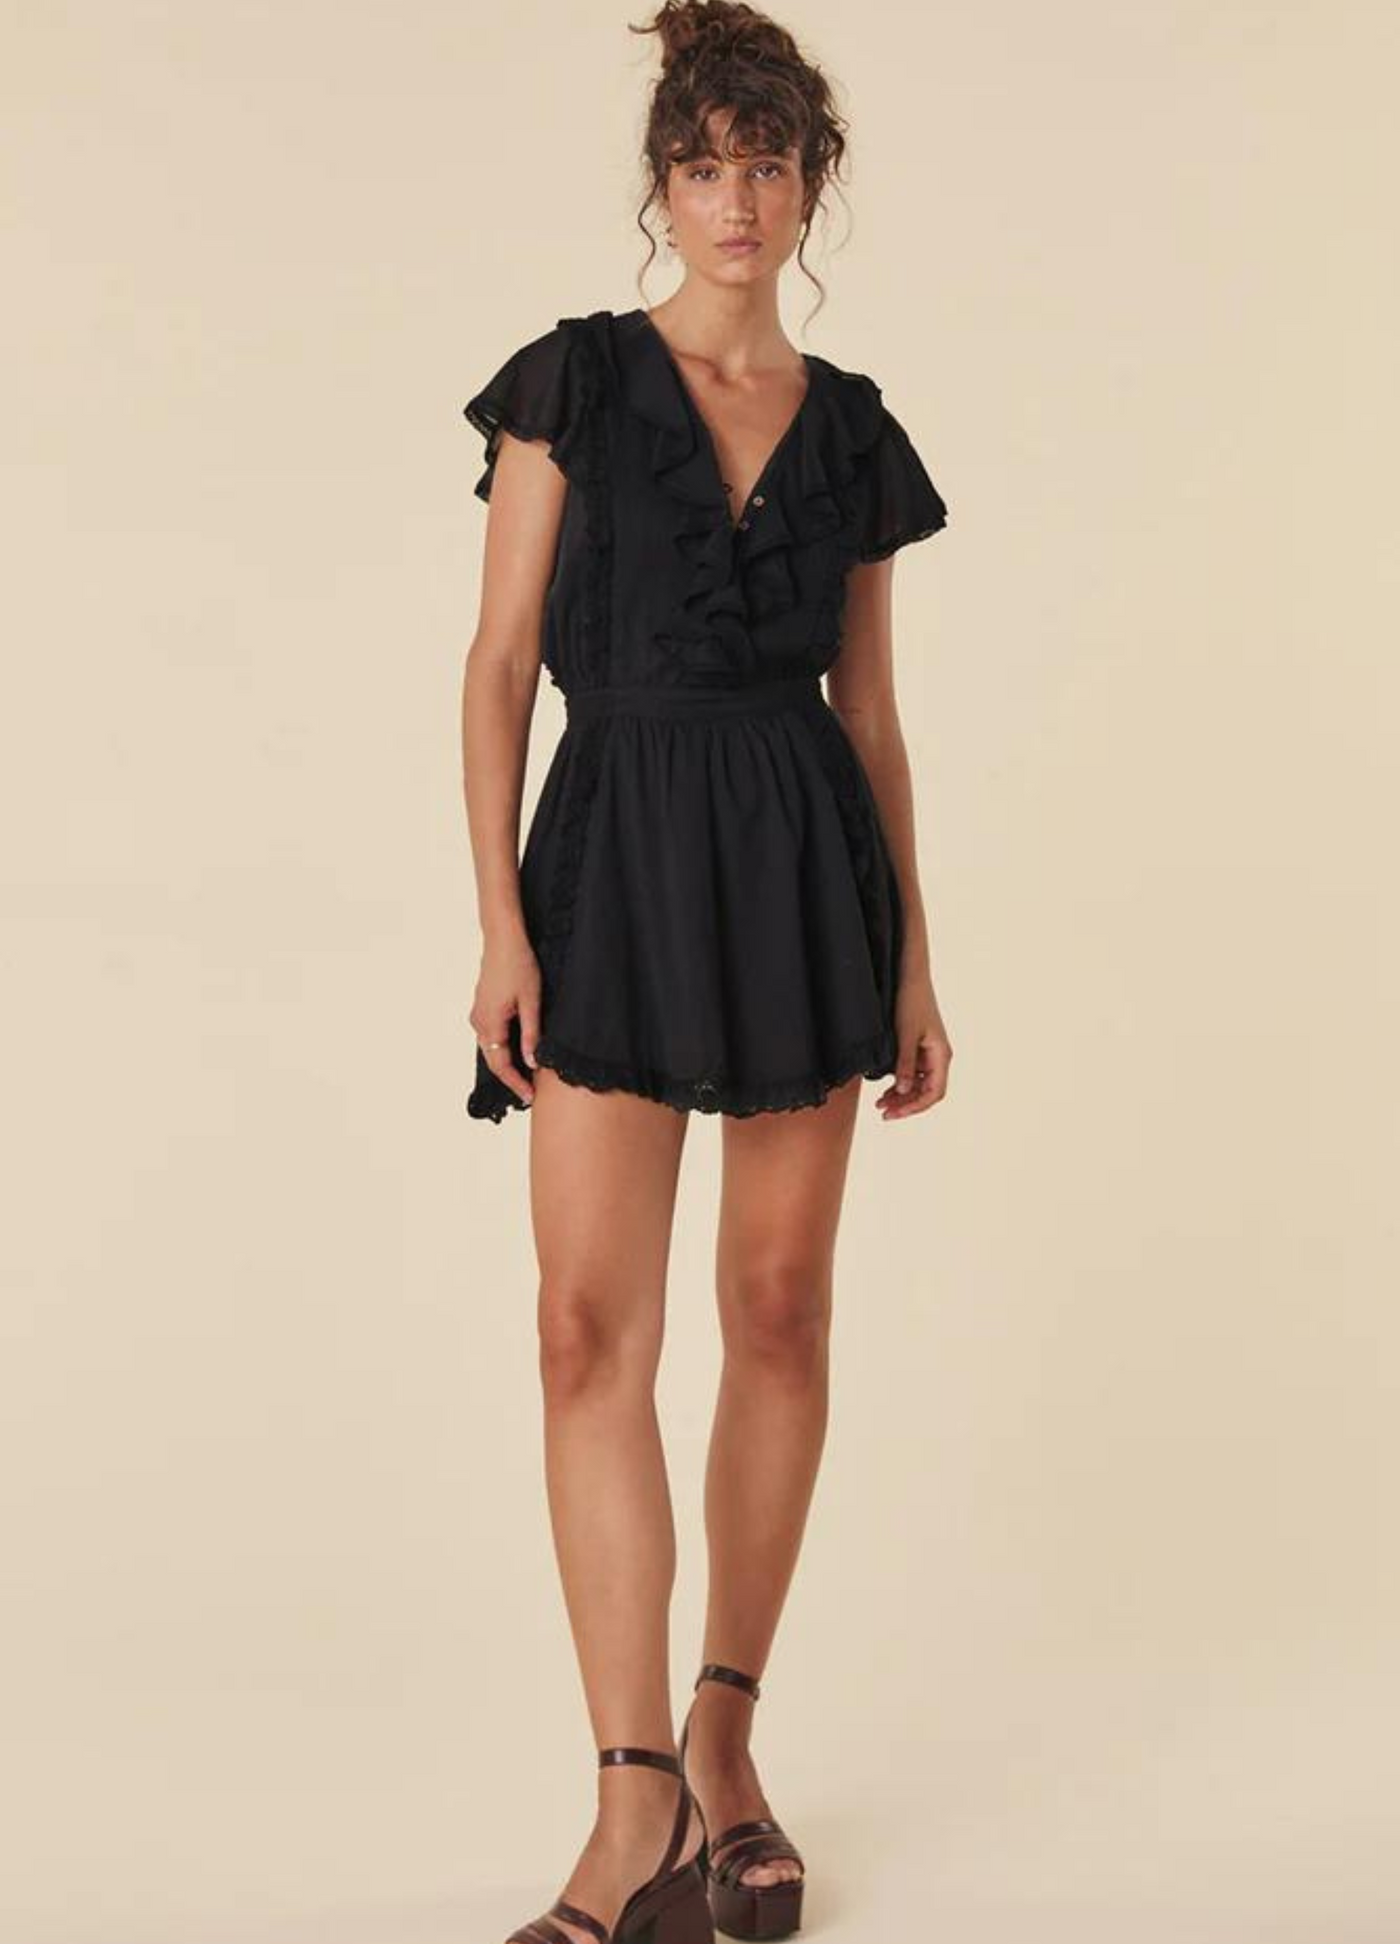 Model wearing the black dove lace mini dress